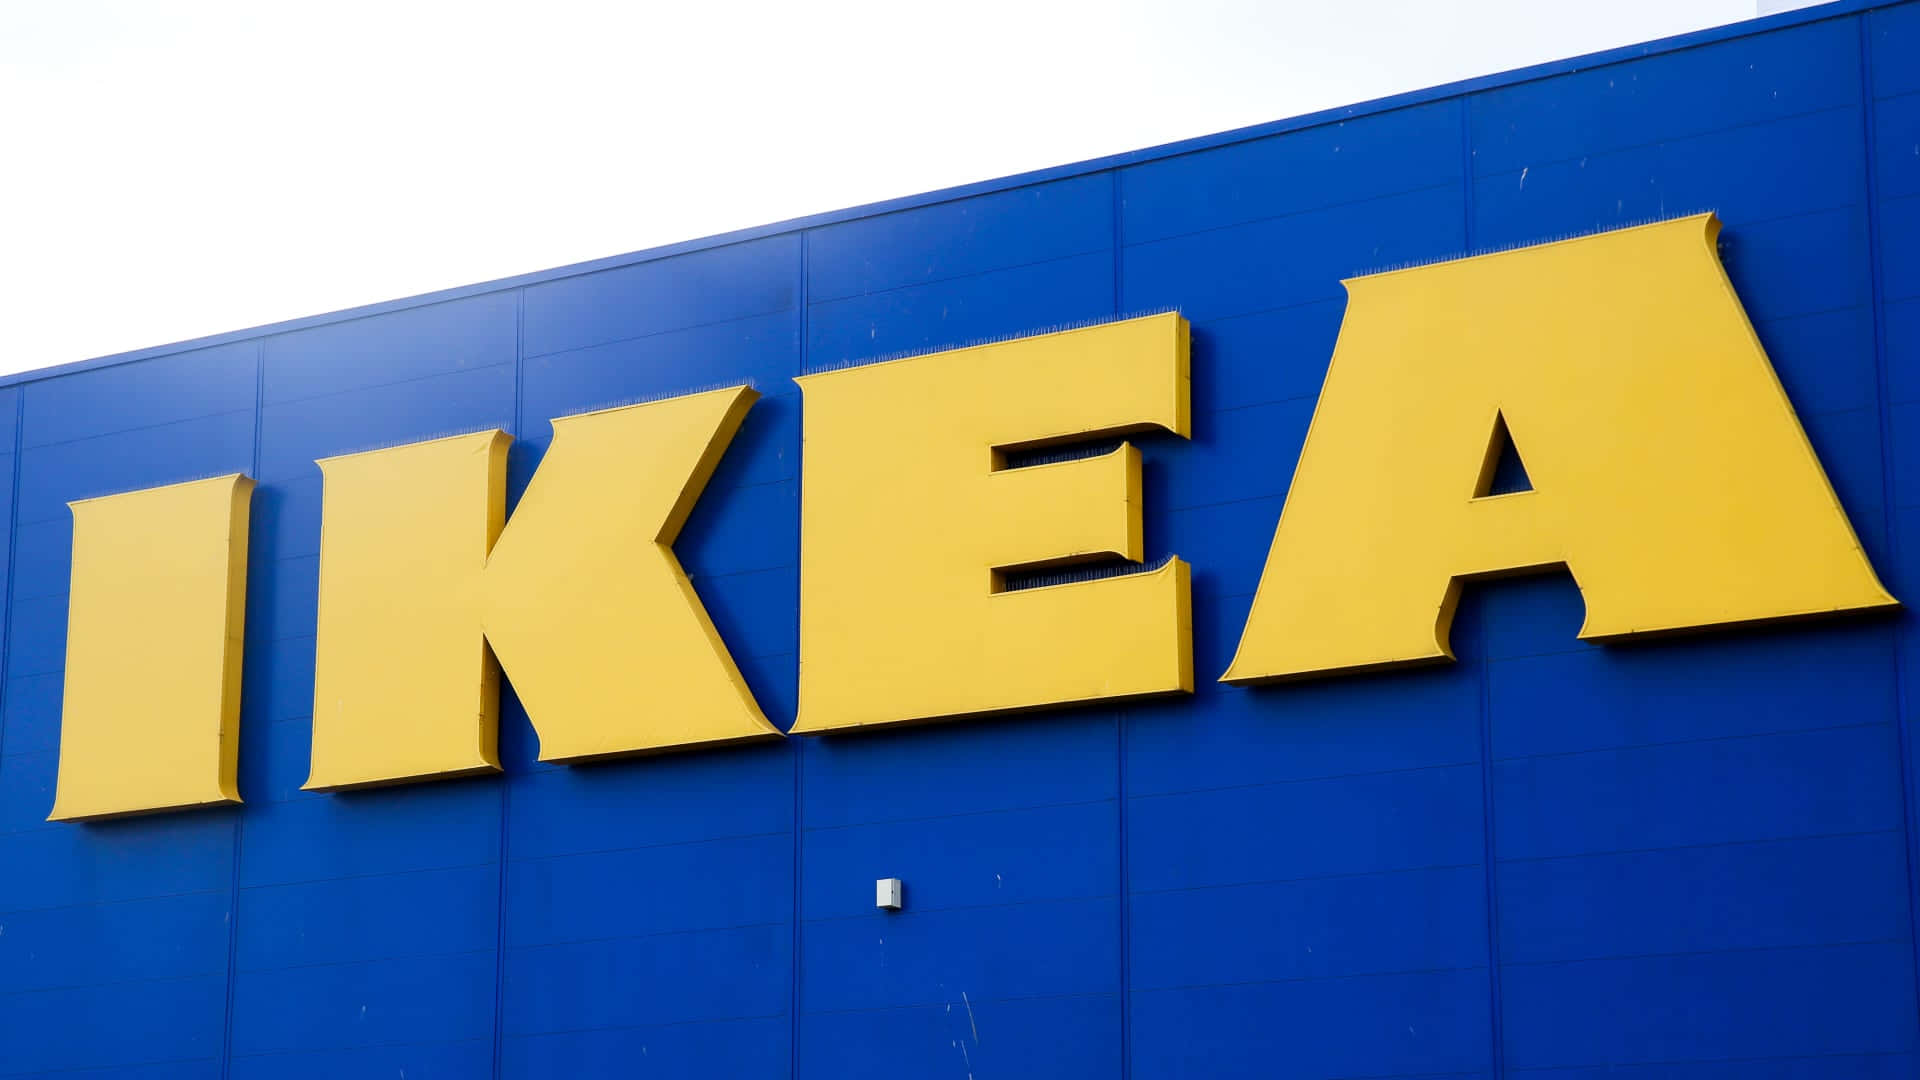 Ilnuovo Logo Di Ikea Viene Mostrato Sul Lato Di Un Edificio.